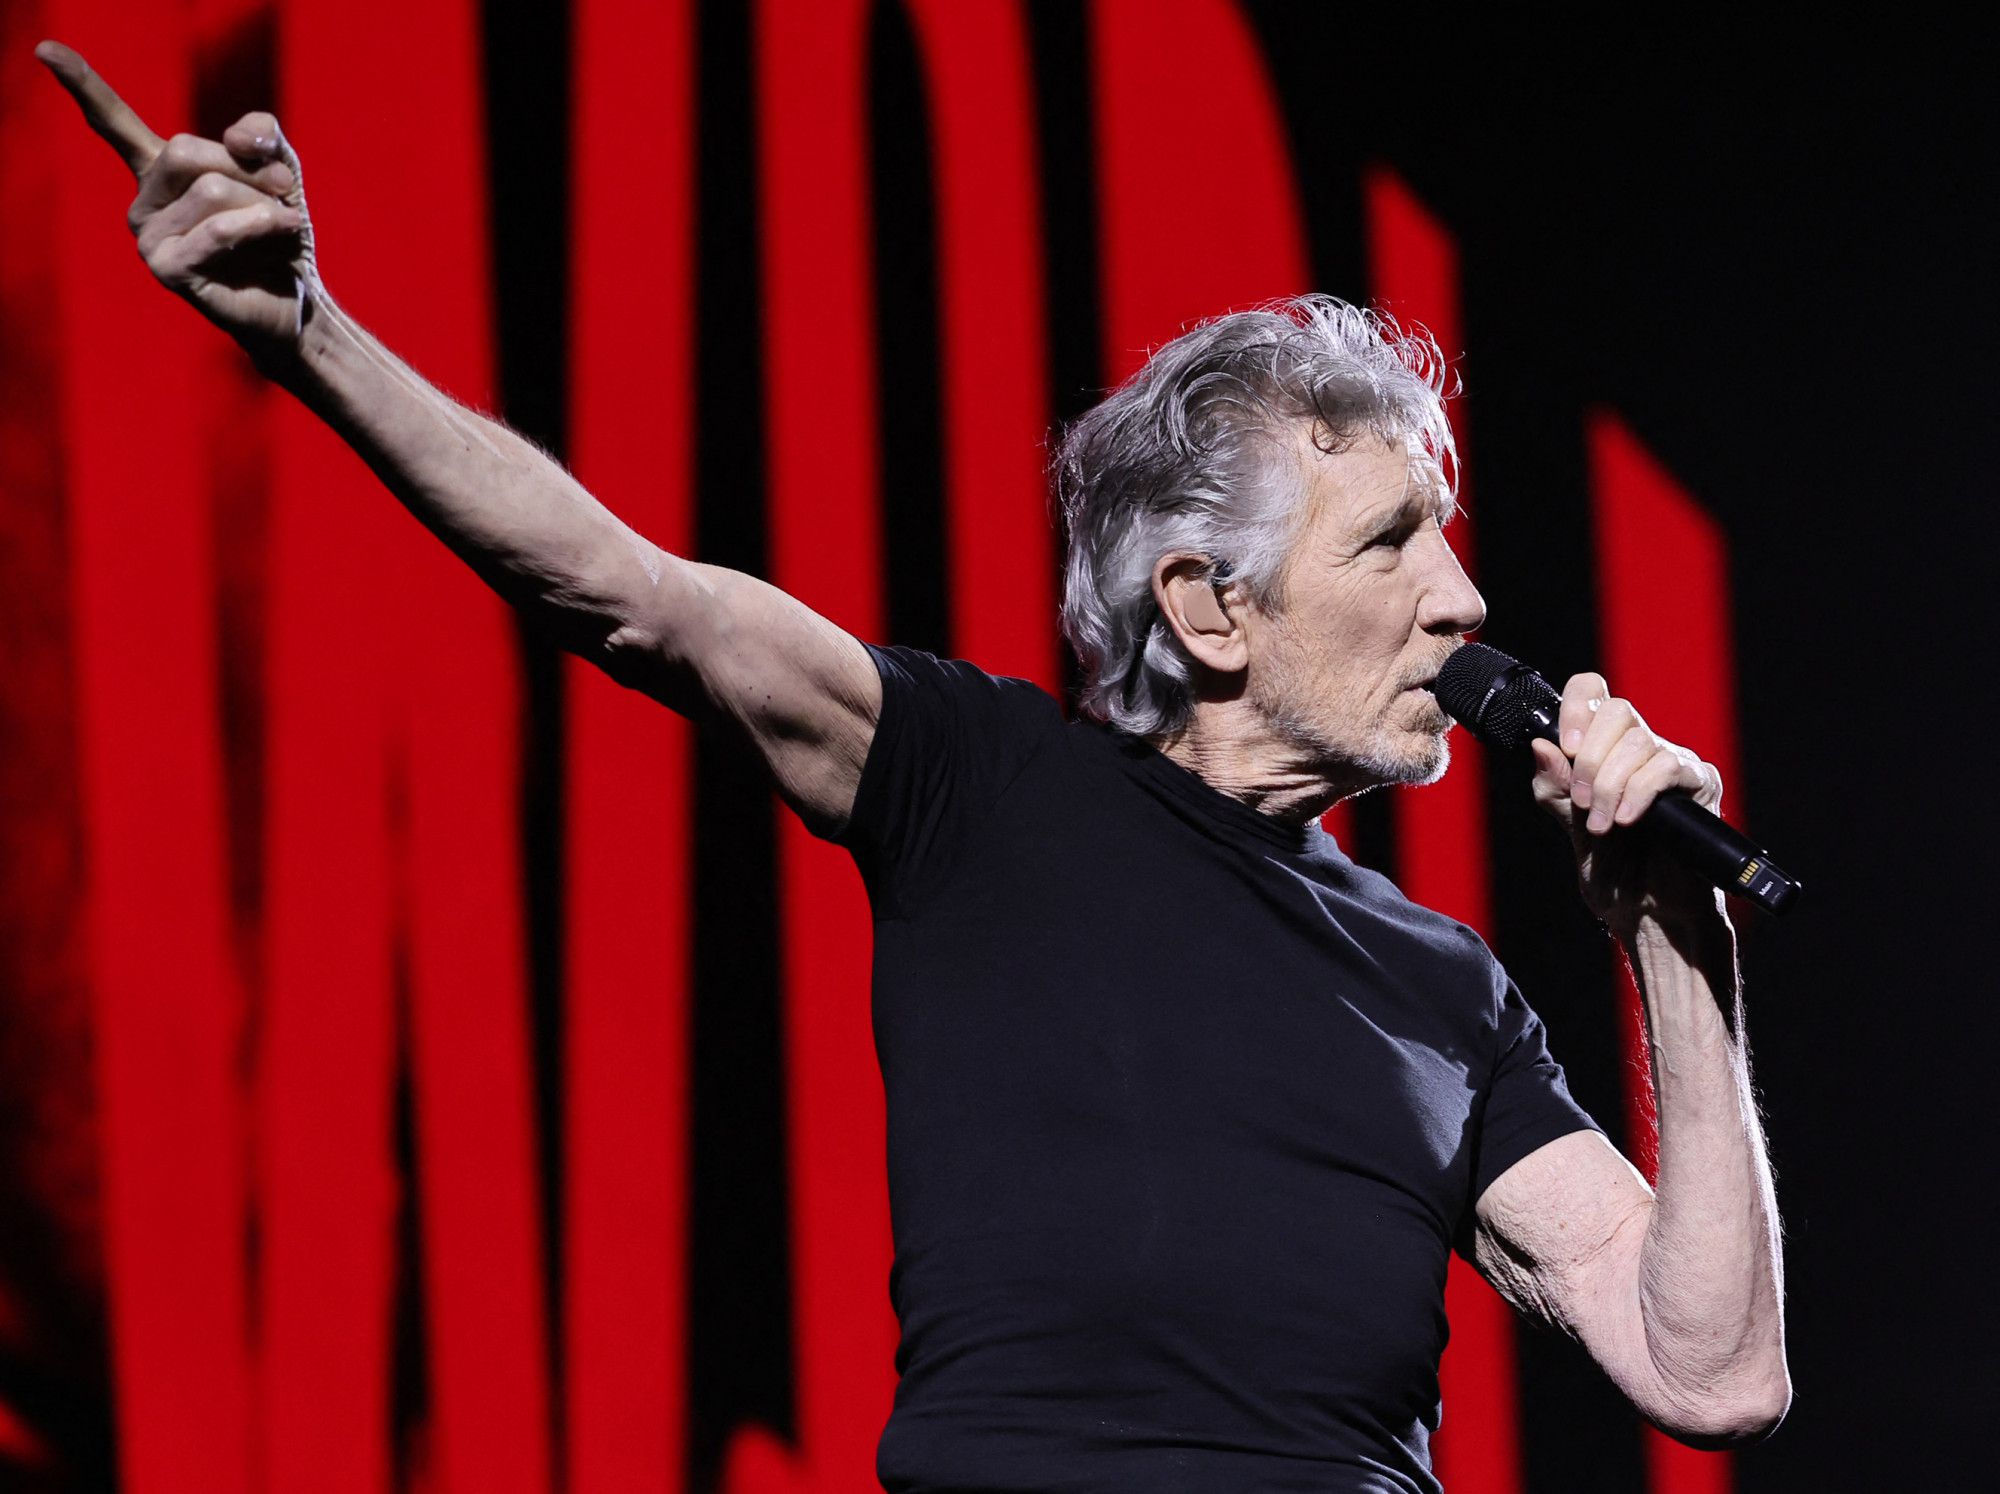 Roger Waters szerint fake news, hogy törölte volna krakkói koncertjeit